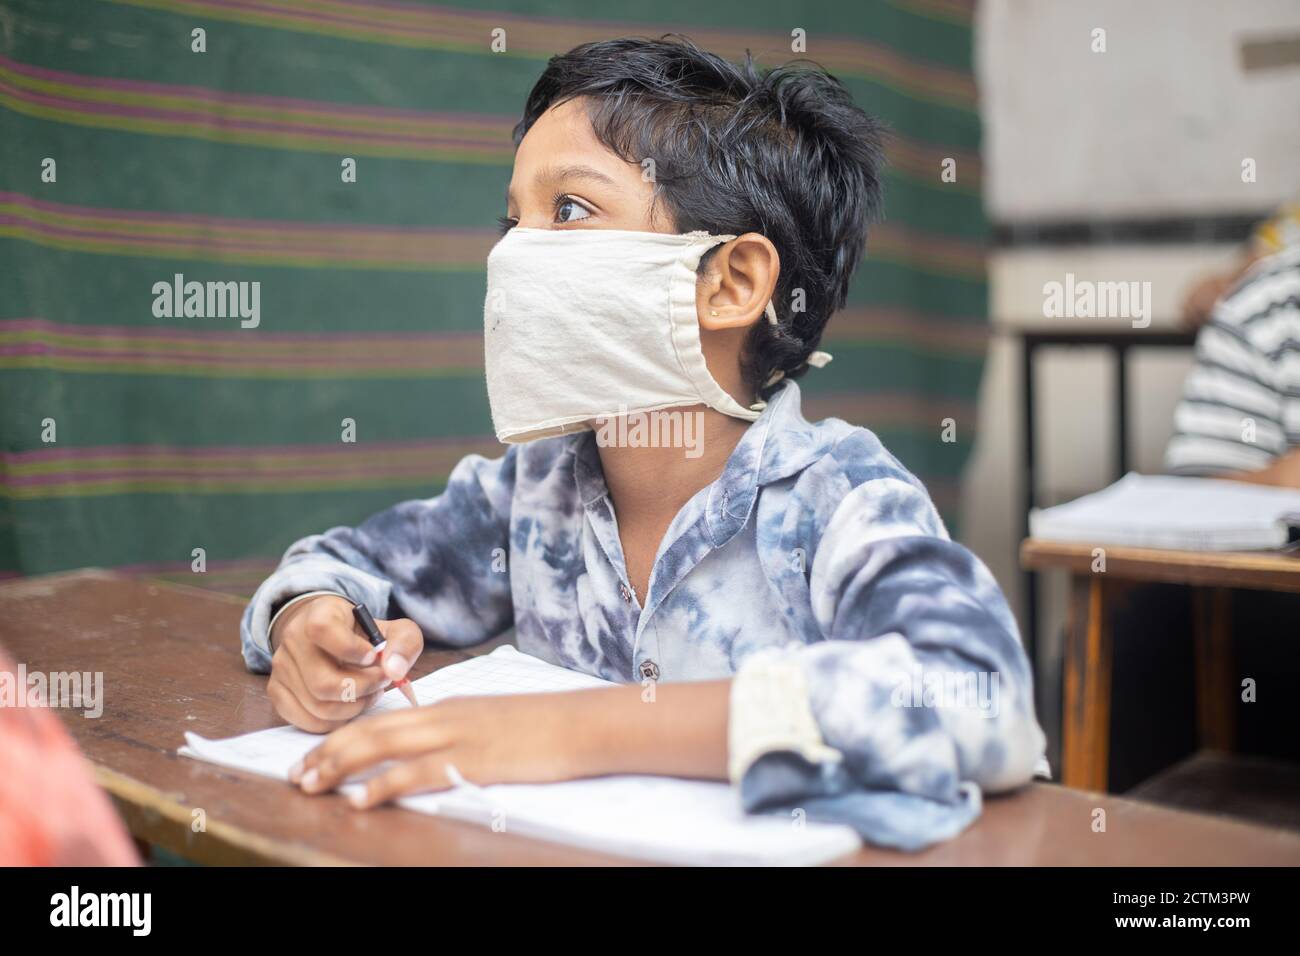 Estudiantes de niños indios que estudian en el salón de clases usando máscara manteniendo el distanciamiento social mira la cámara, reabre la escuela durante la pandemia de covid19, nueva norma Foto de stock